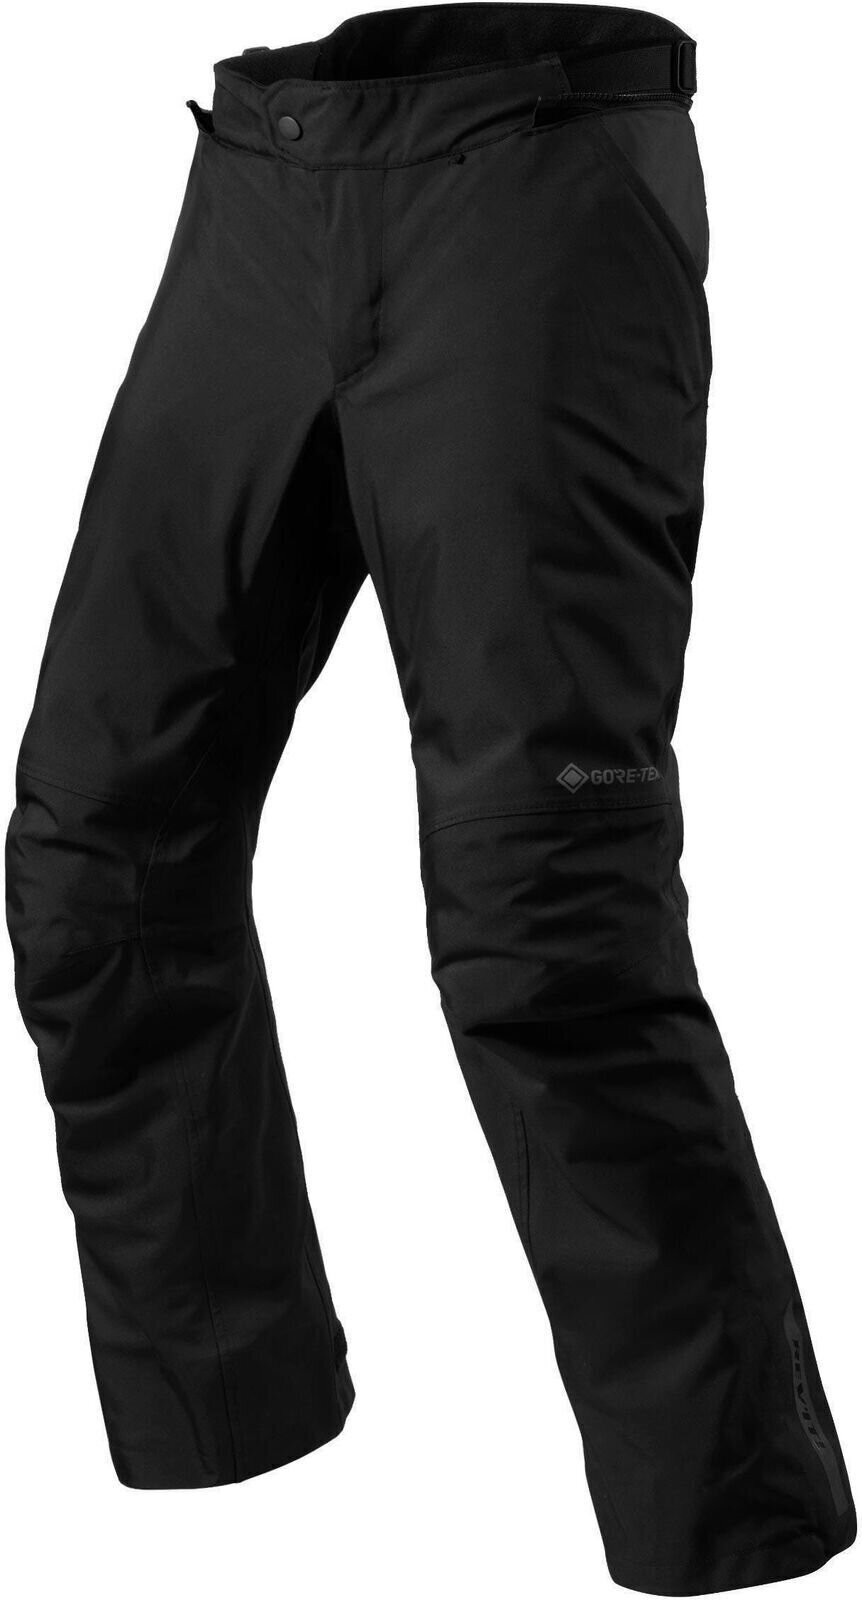 Textiel broek Rev'it! Pants Vertical GTX Black 4XL Regular Textiel broek